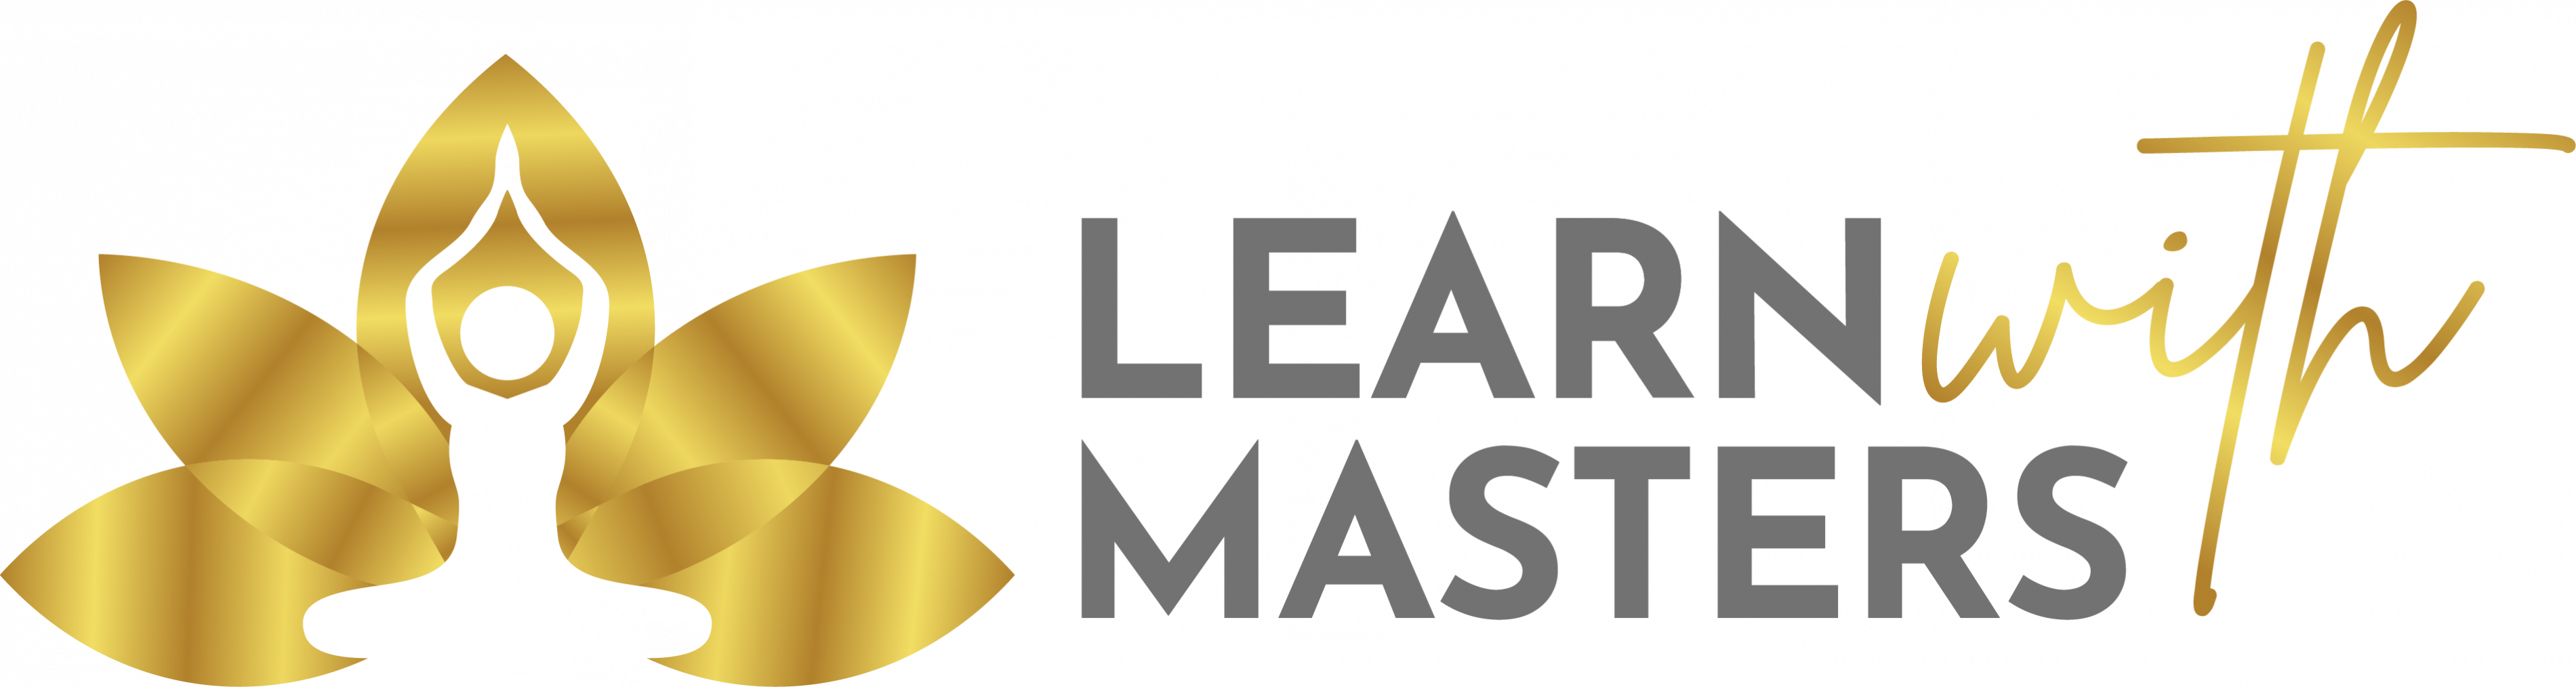 HighResGrey Learn with Masters Logo.jpg